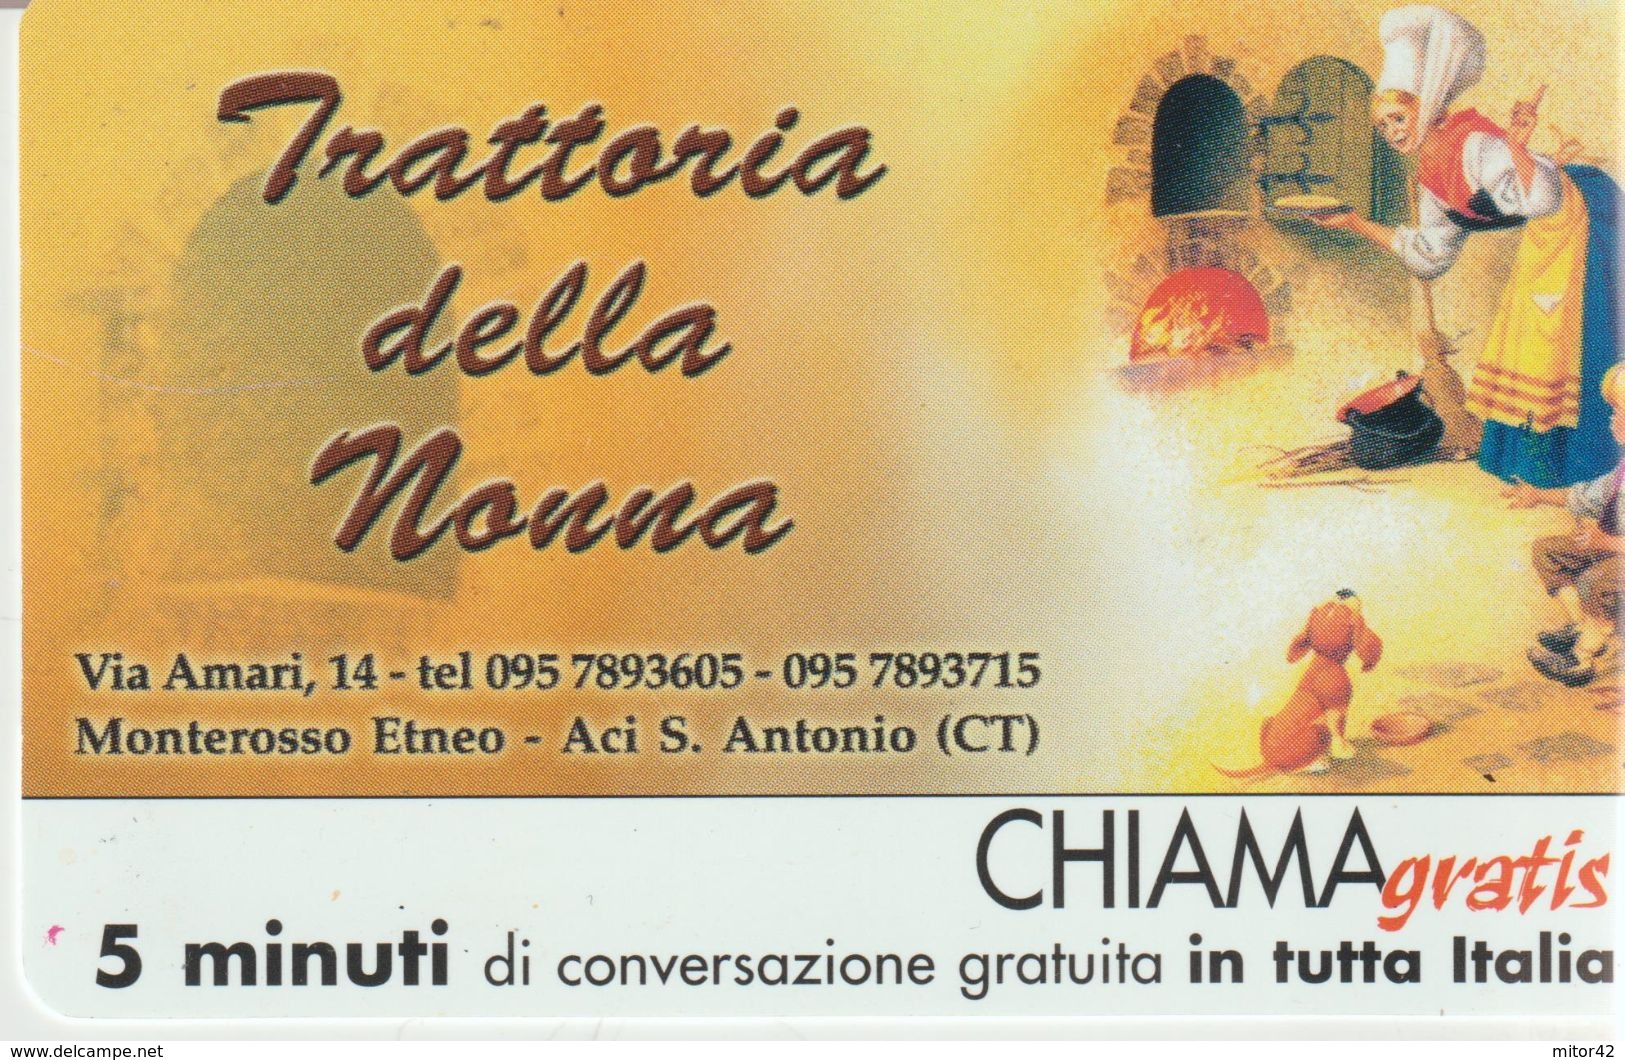 60-Chiama-gratis-Trattoria Della Nonna-Monterosso Etneo-Aci S.Antonio-Catania-Nuova - Sonderzwecke